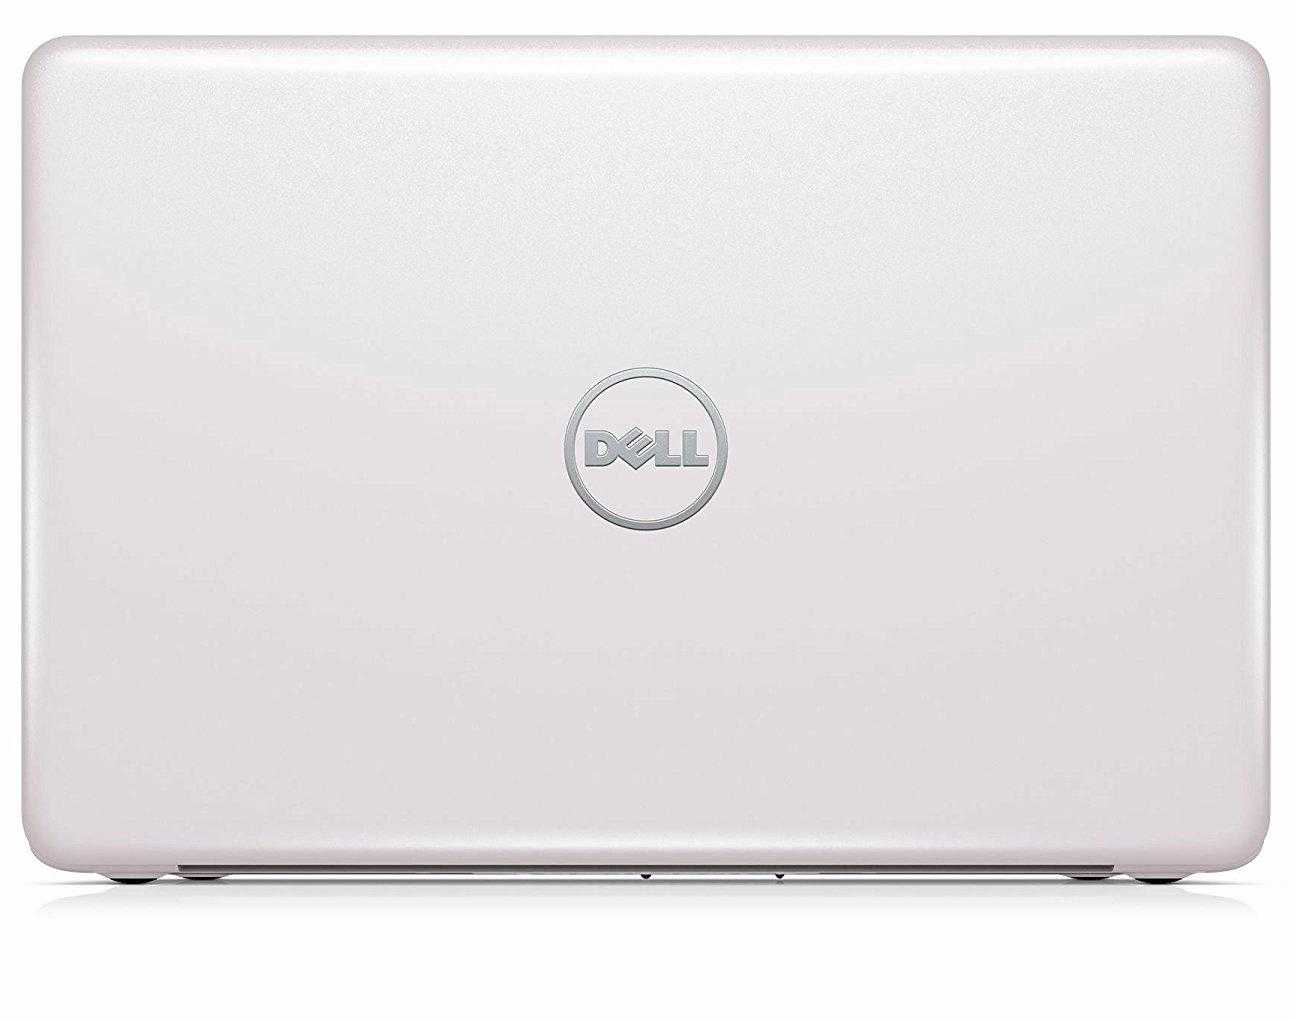 Ноутбук dell inspiron 5565 5565-7766 (белый) купить от 25680 руб в перми, сравнить цены, отзывы, видео обзоры и характеристики